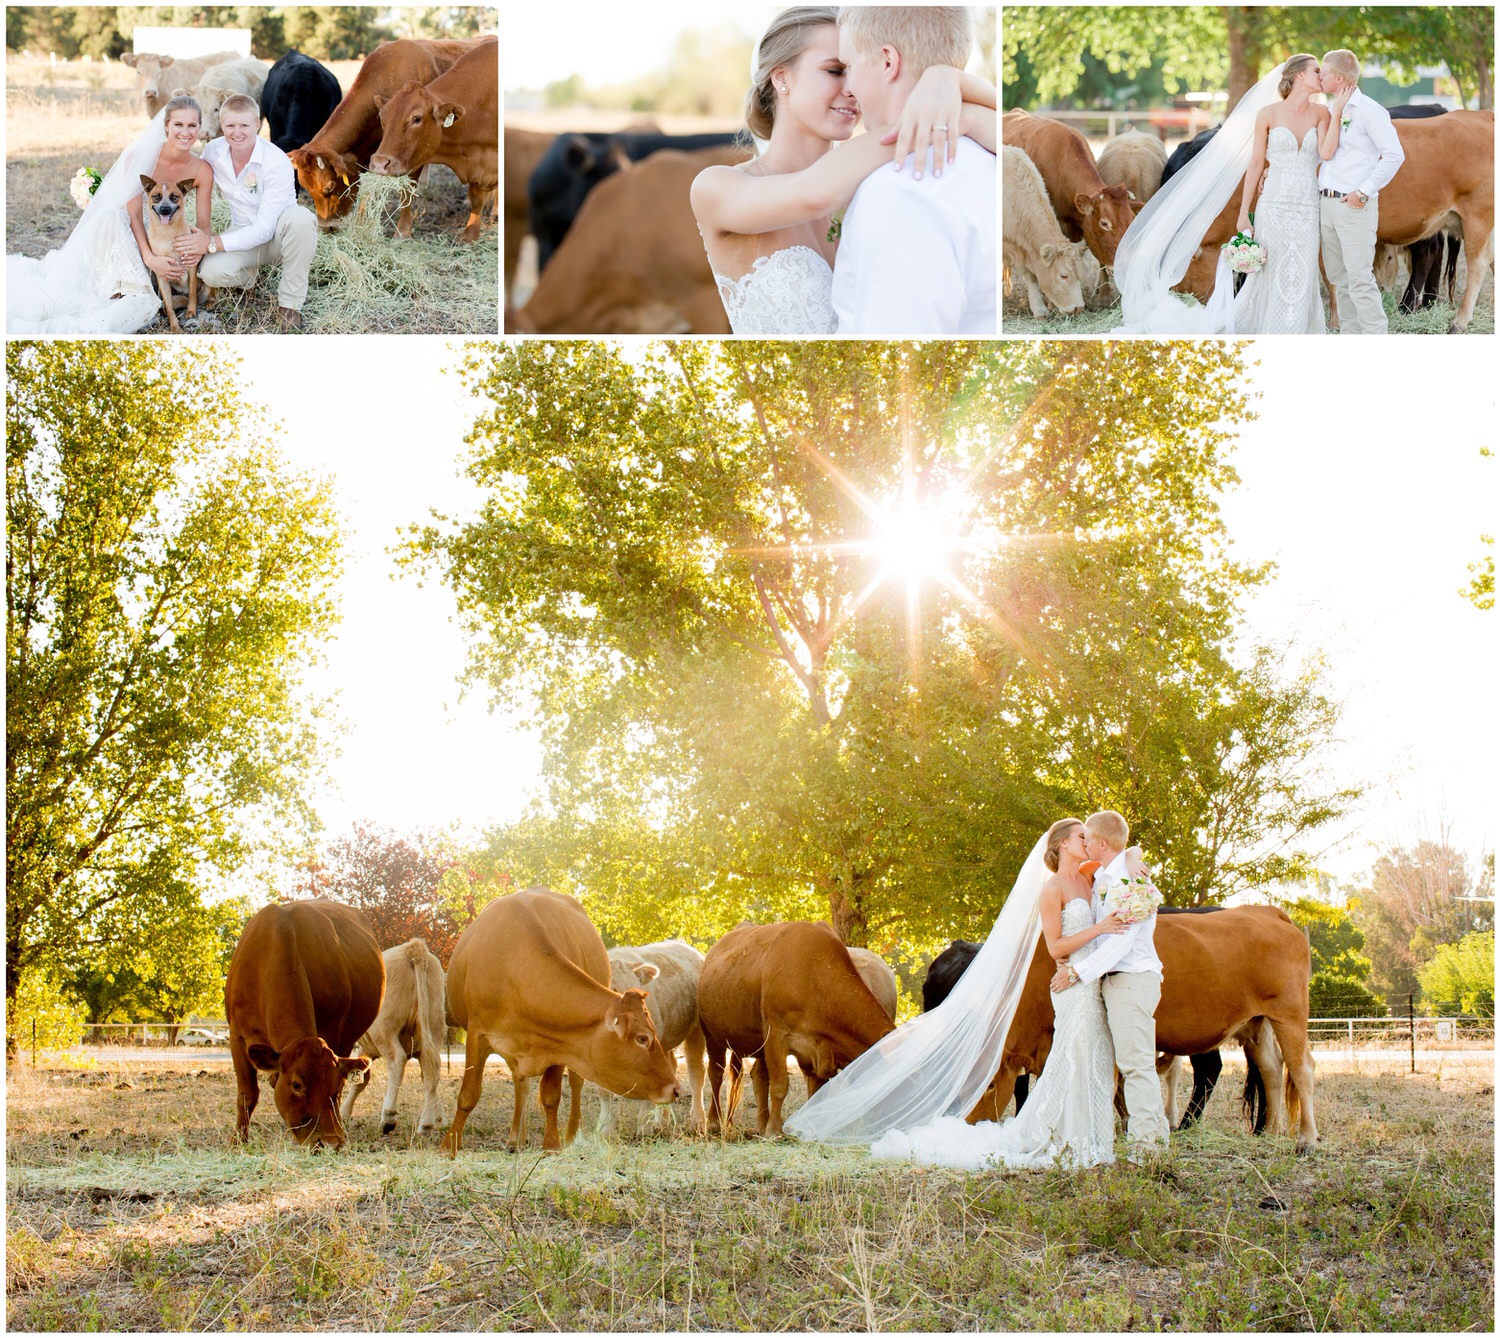 Dubbo Wedding Photography - Country Wedding 11